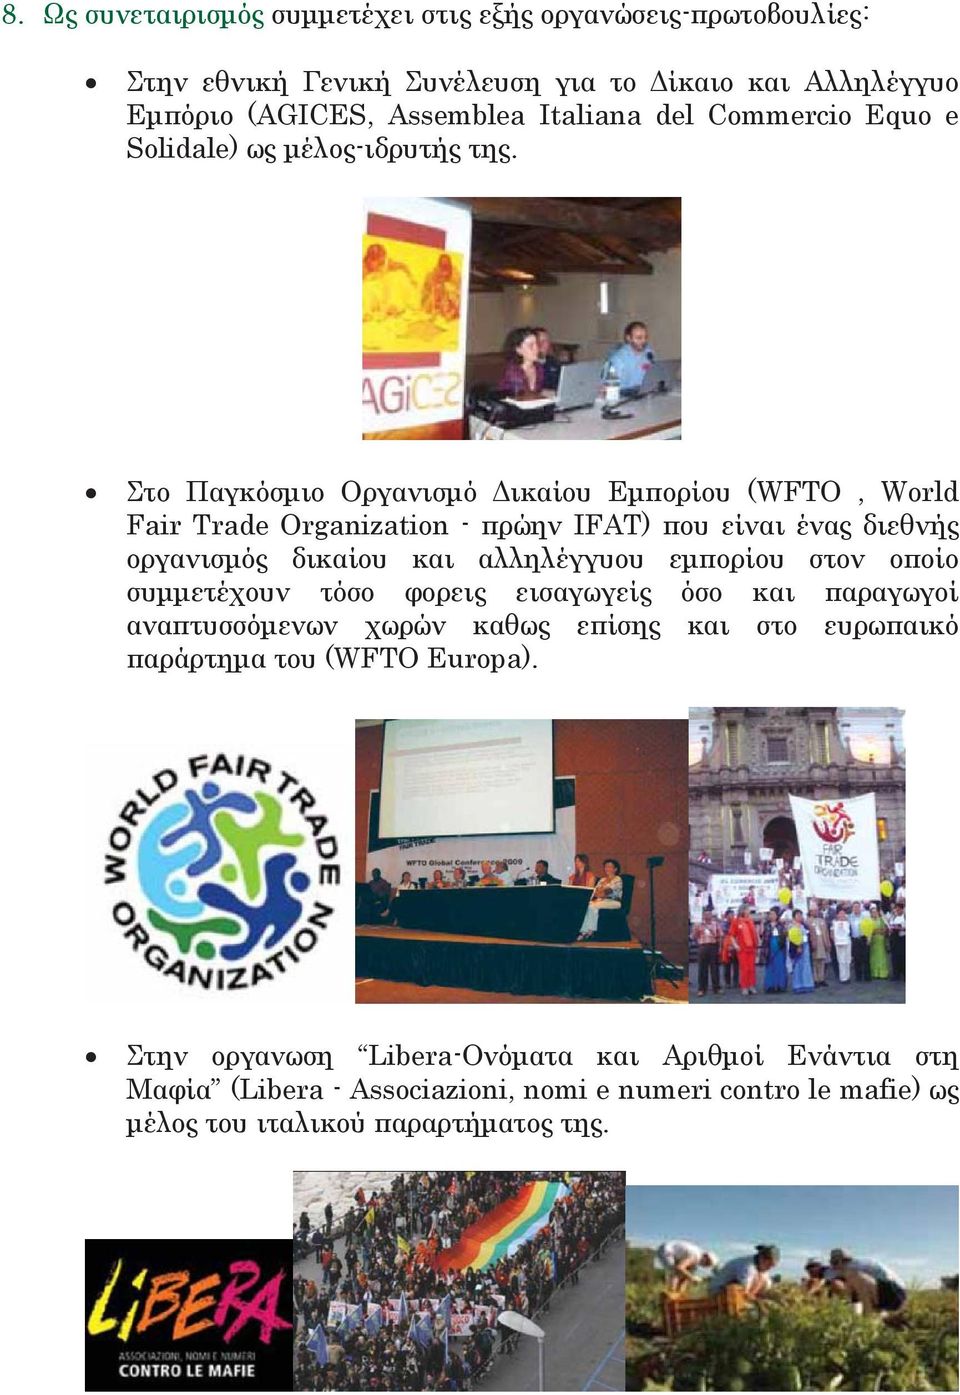 Στο Παγκόσμιο Οργανισμό Δικαίου Εμπορίου (WFTO, World Fair Trade Organization - πρώην IFAT) που είναι ένας διεθνής οργανισμός δικαίου και αλληλέγγυου εμπορίου στον